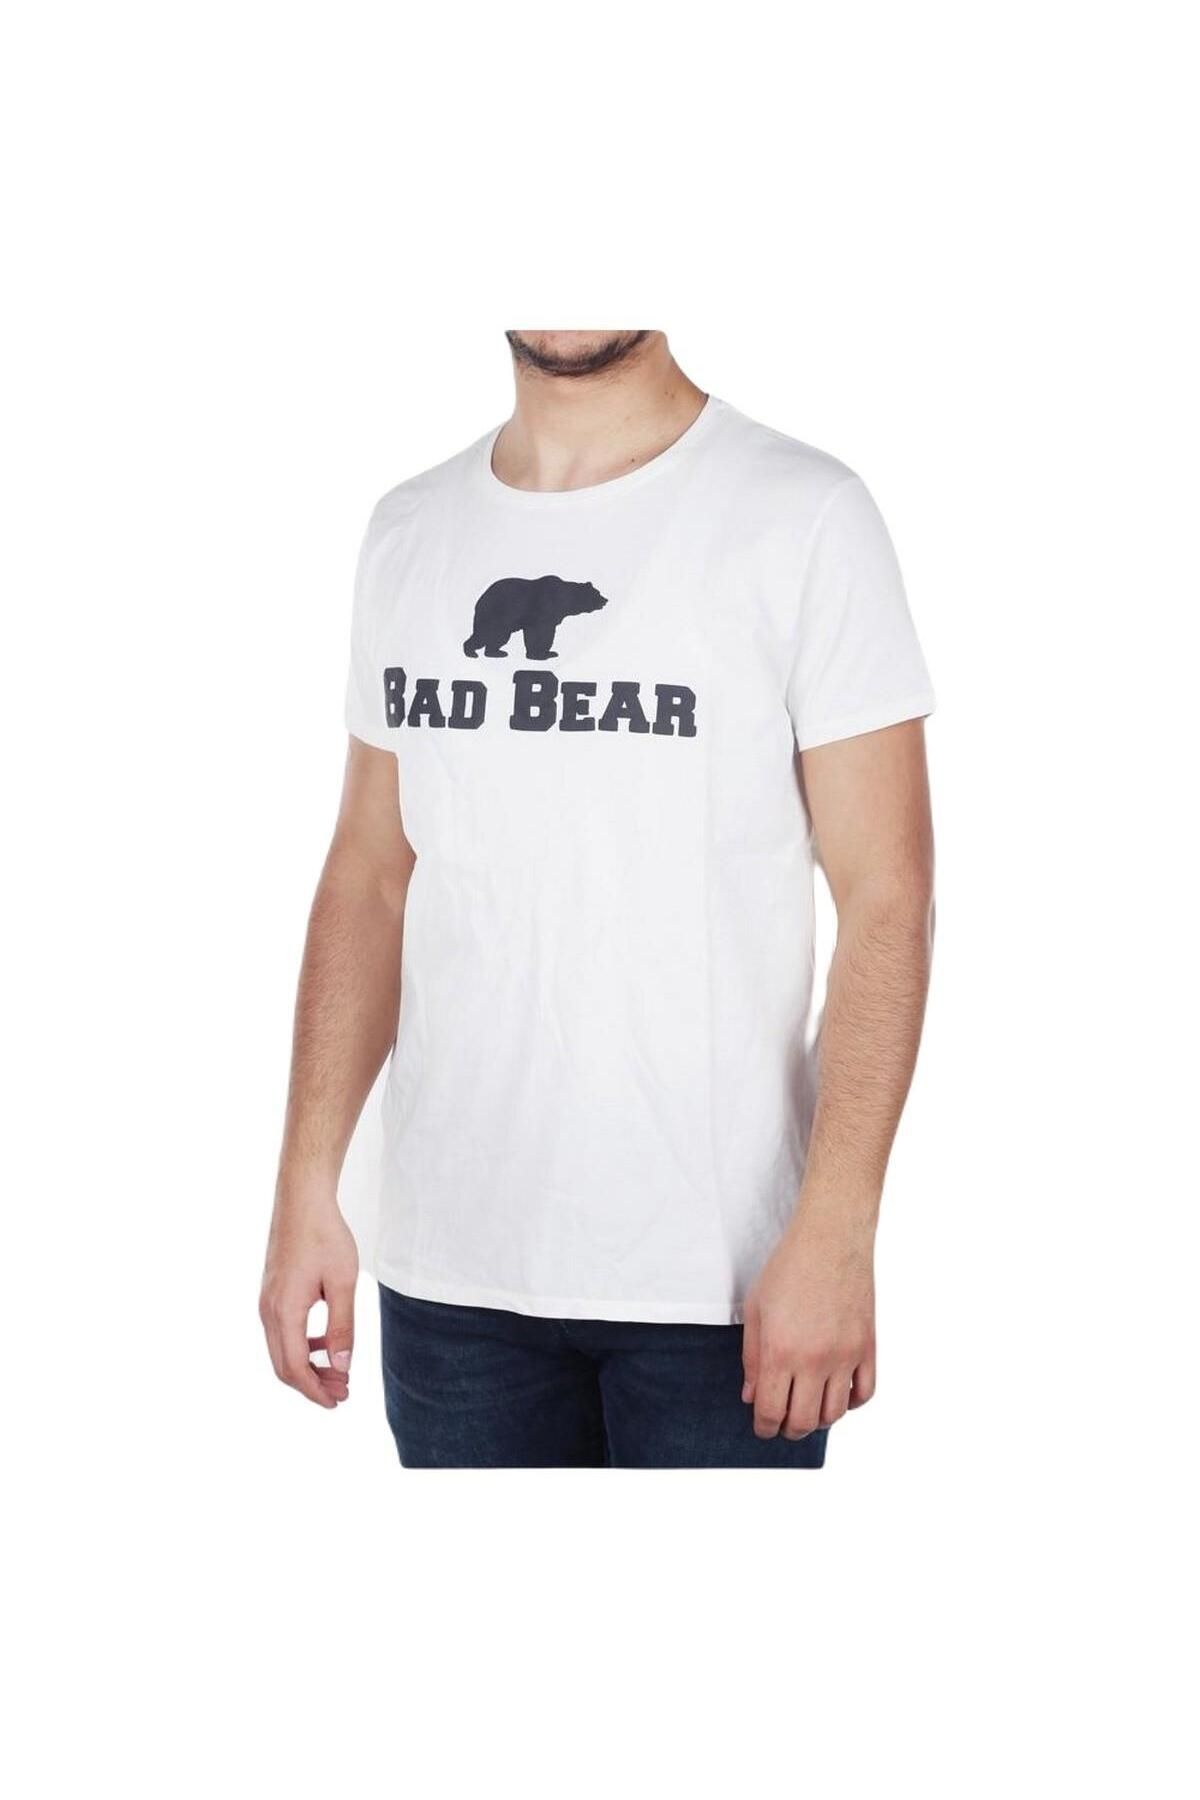 Bad Bear Erkek T-shirt Siyah 19.01.07.002 Tee